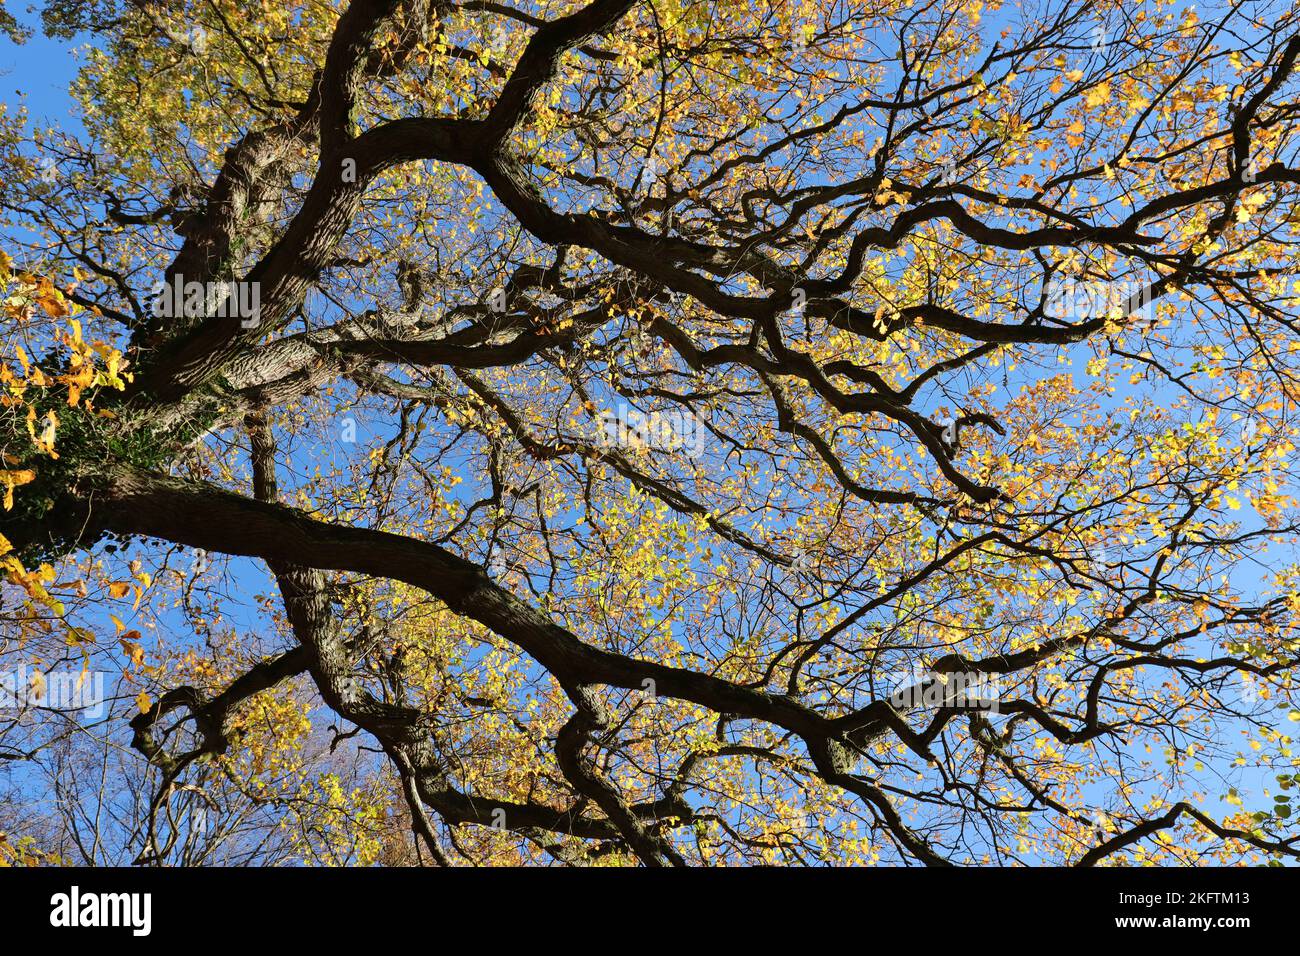 Vue d'en dessous dans les branches bizarrose d'un vieux chêne avec la couleur jaune doré d'automne contre un ciel bleu Banque D'Images